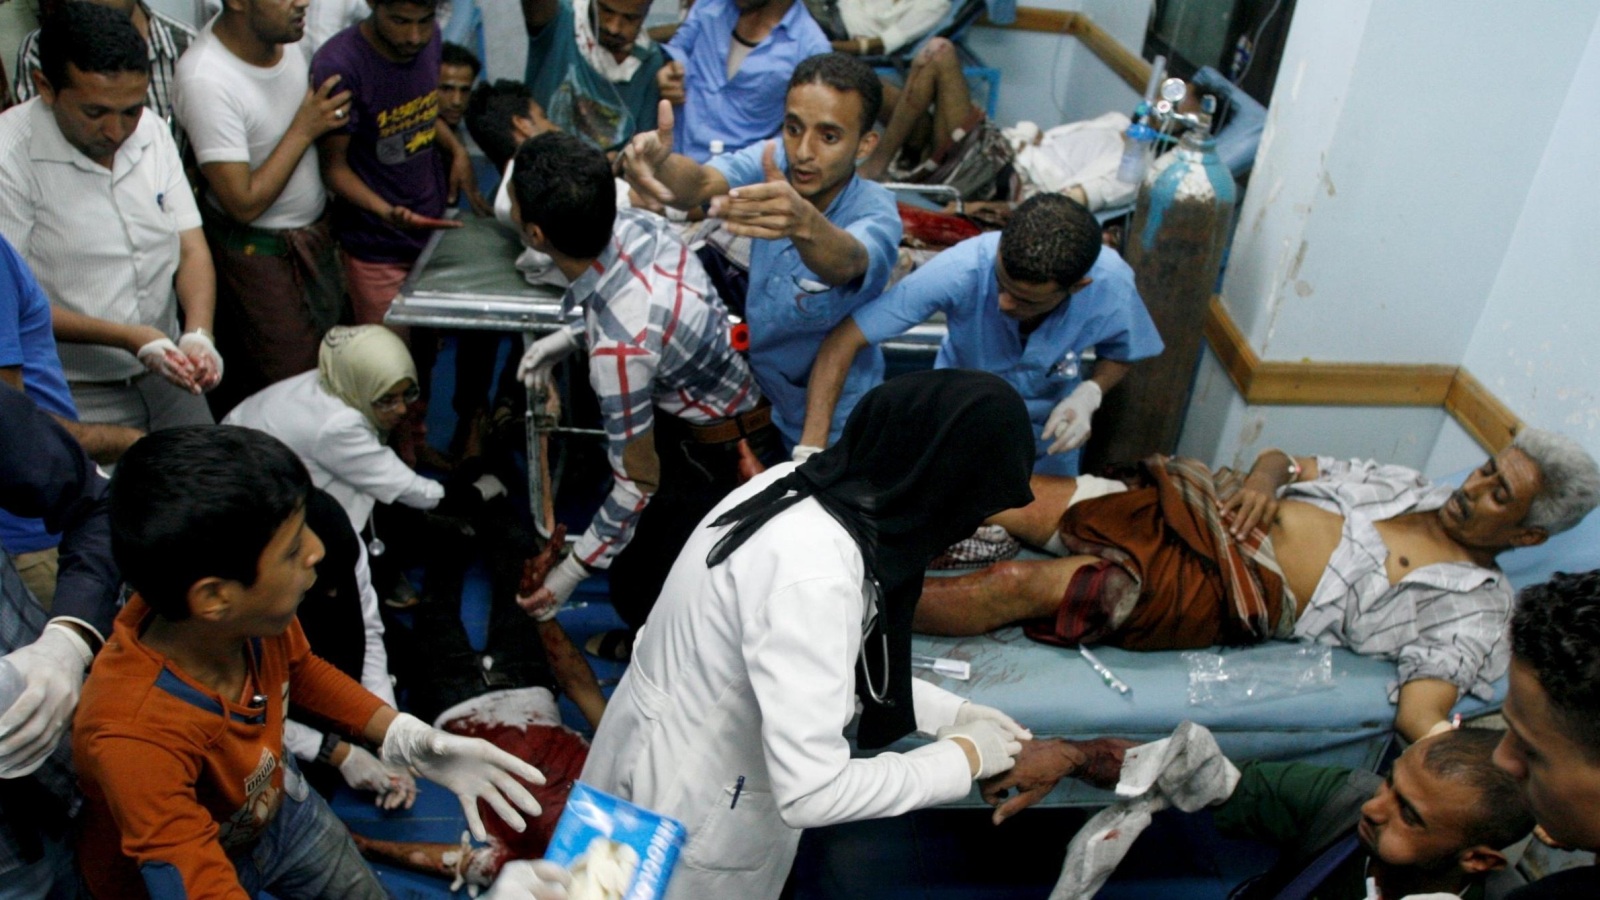  مستشفيات تعز أطلقت نداءات استغاثة للمواطنين للتبرع بالدم للمصابين (غيتي)